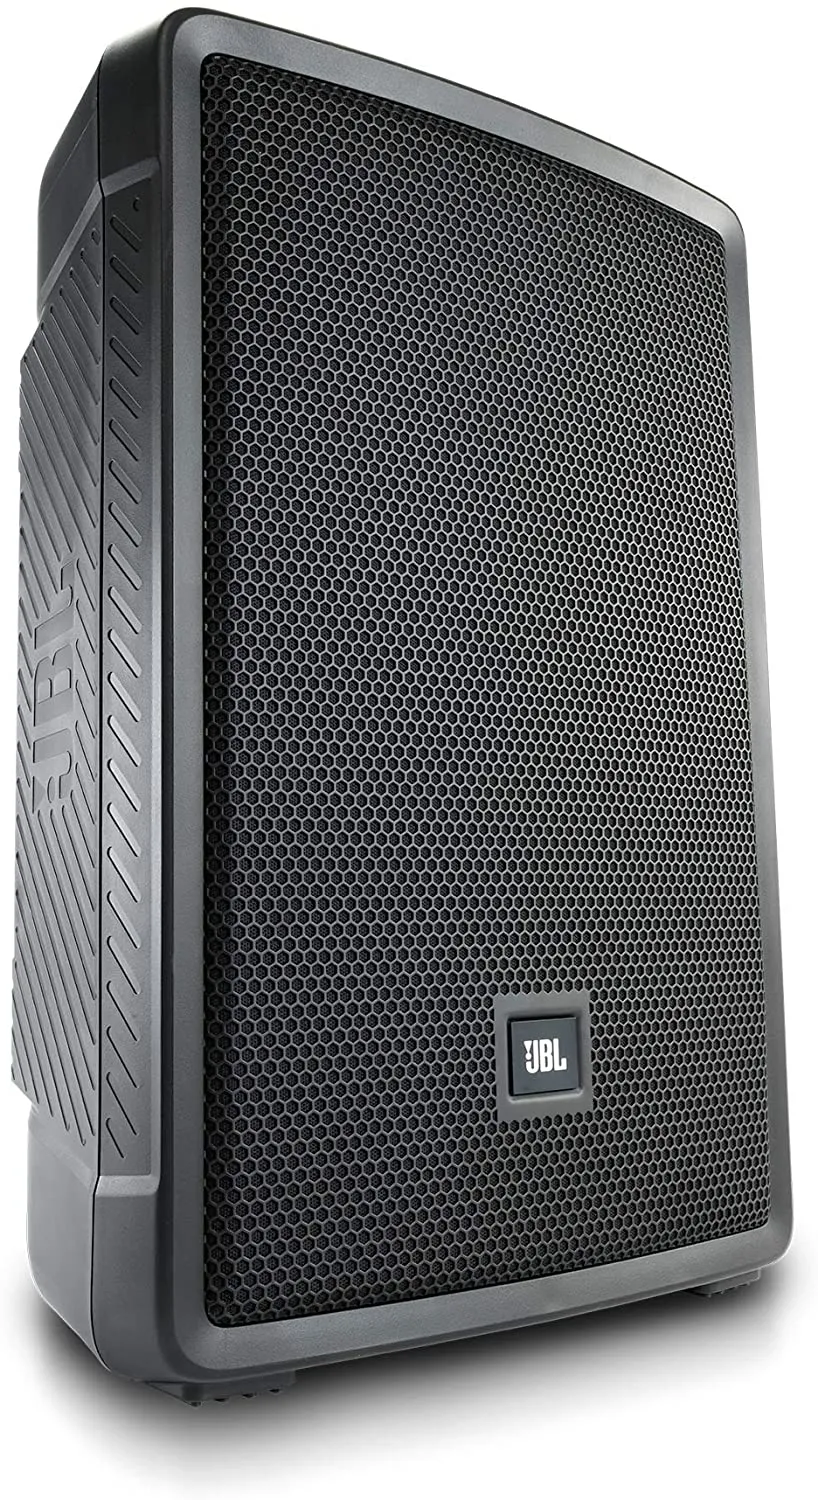 JBL Professional Debuts New, JBL Professional Loudspeakers